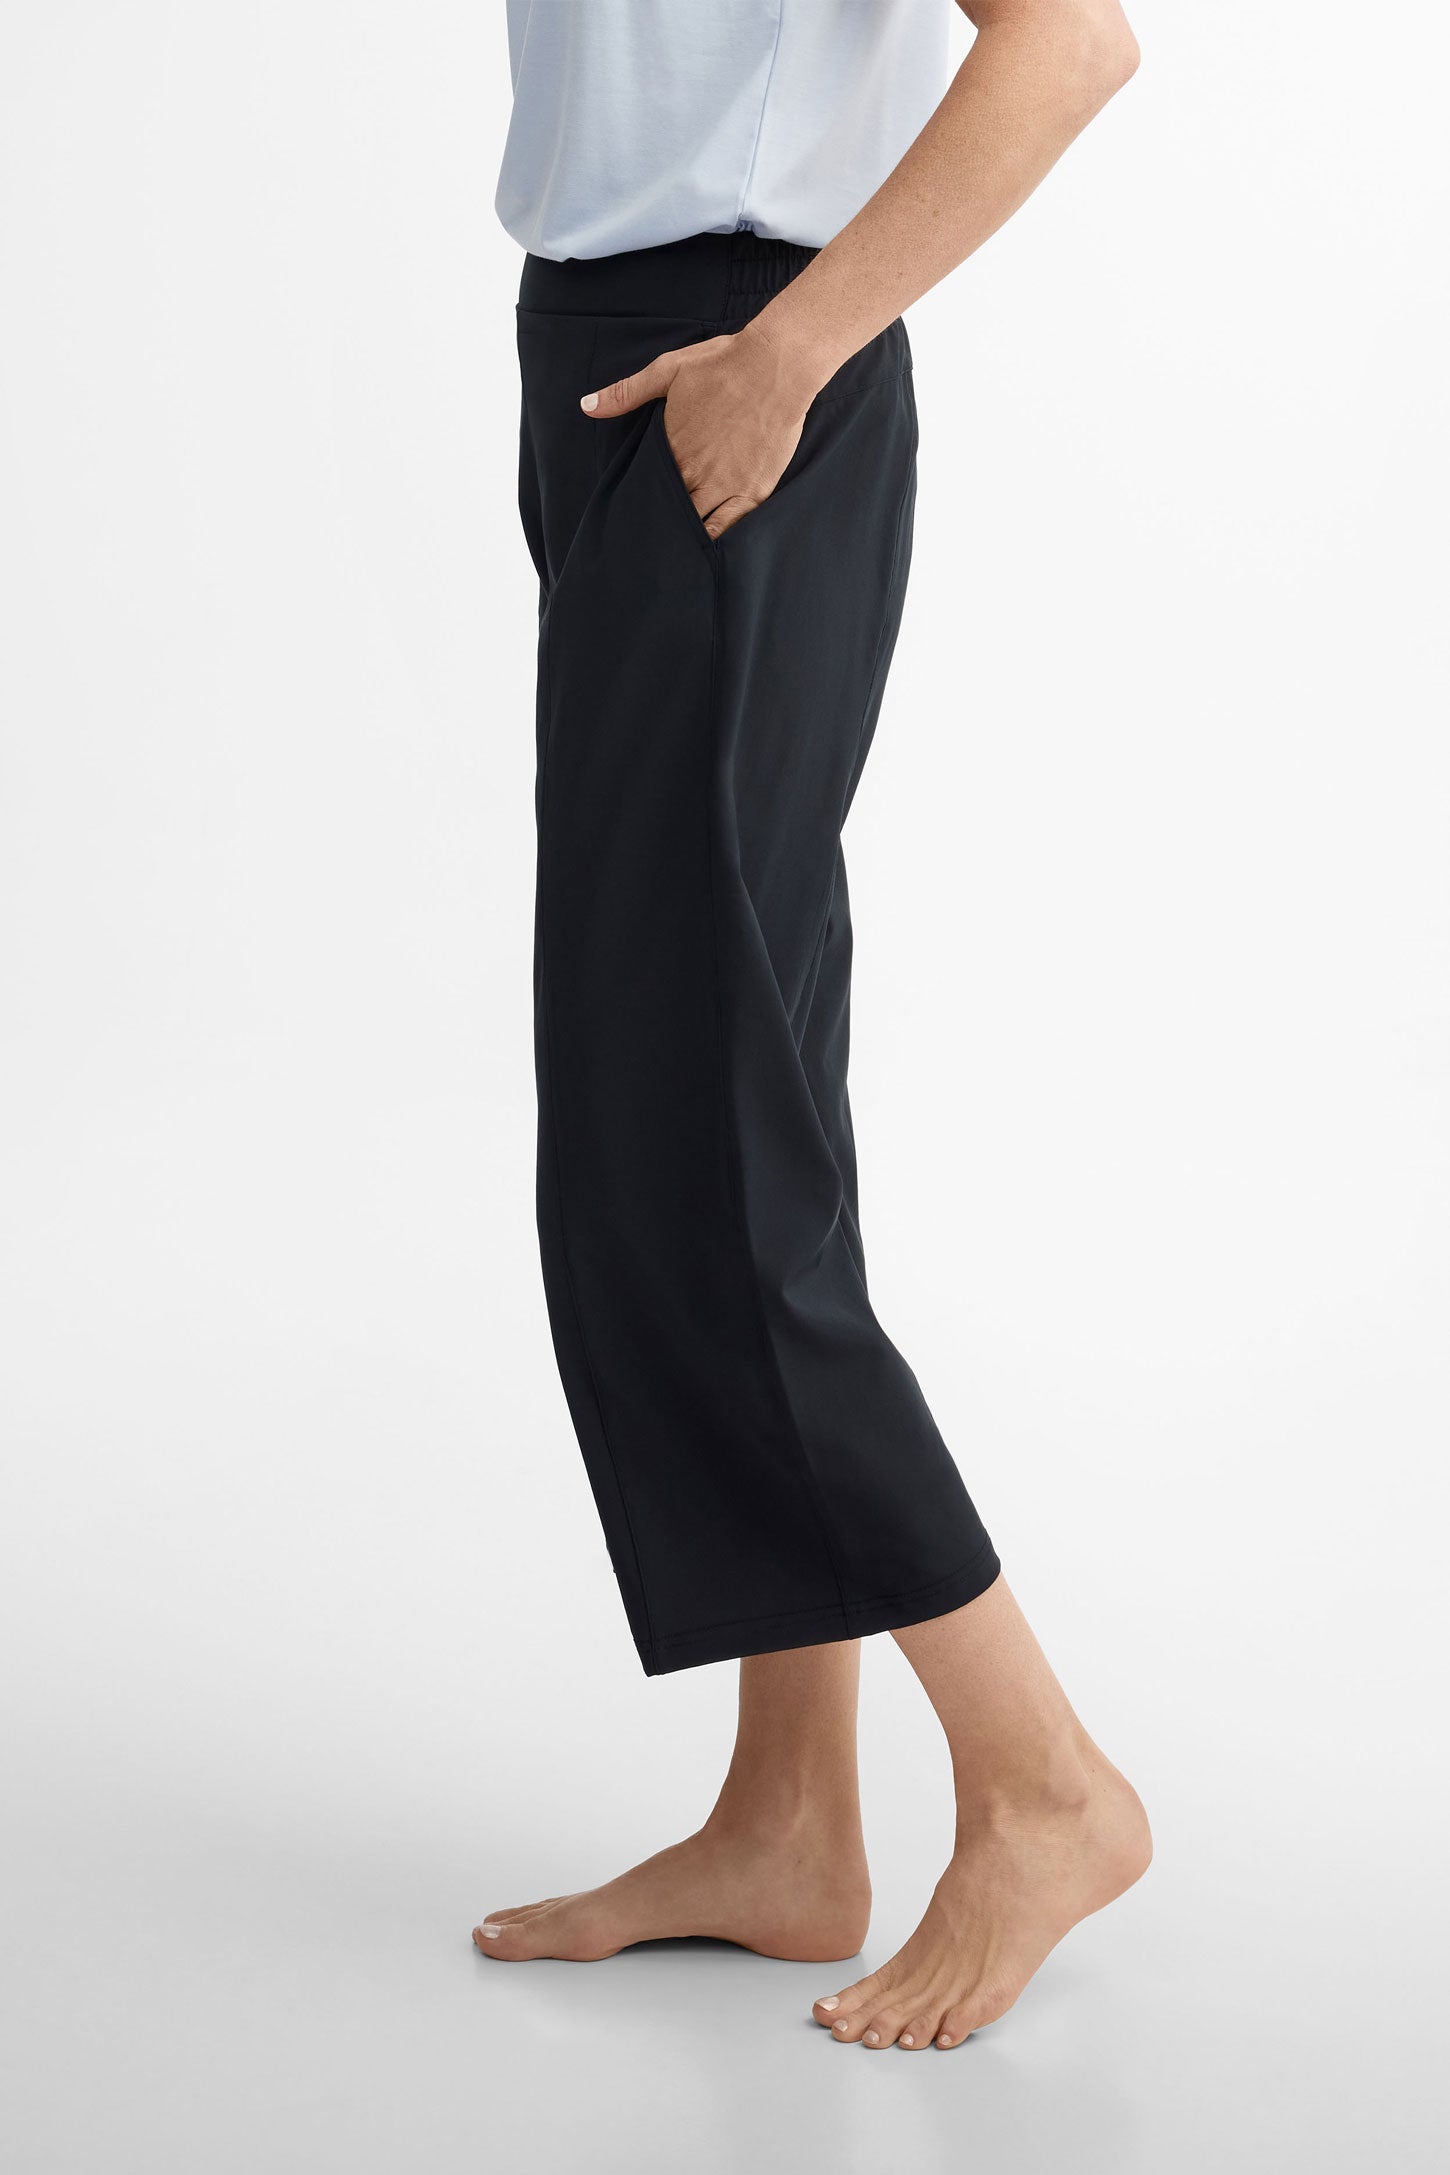 Pantalon taille haute jambe large extensible 4 sens - Femme && NOIR